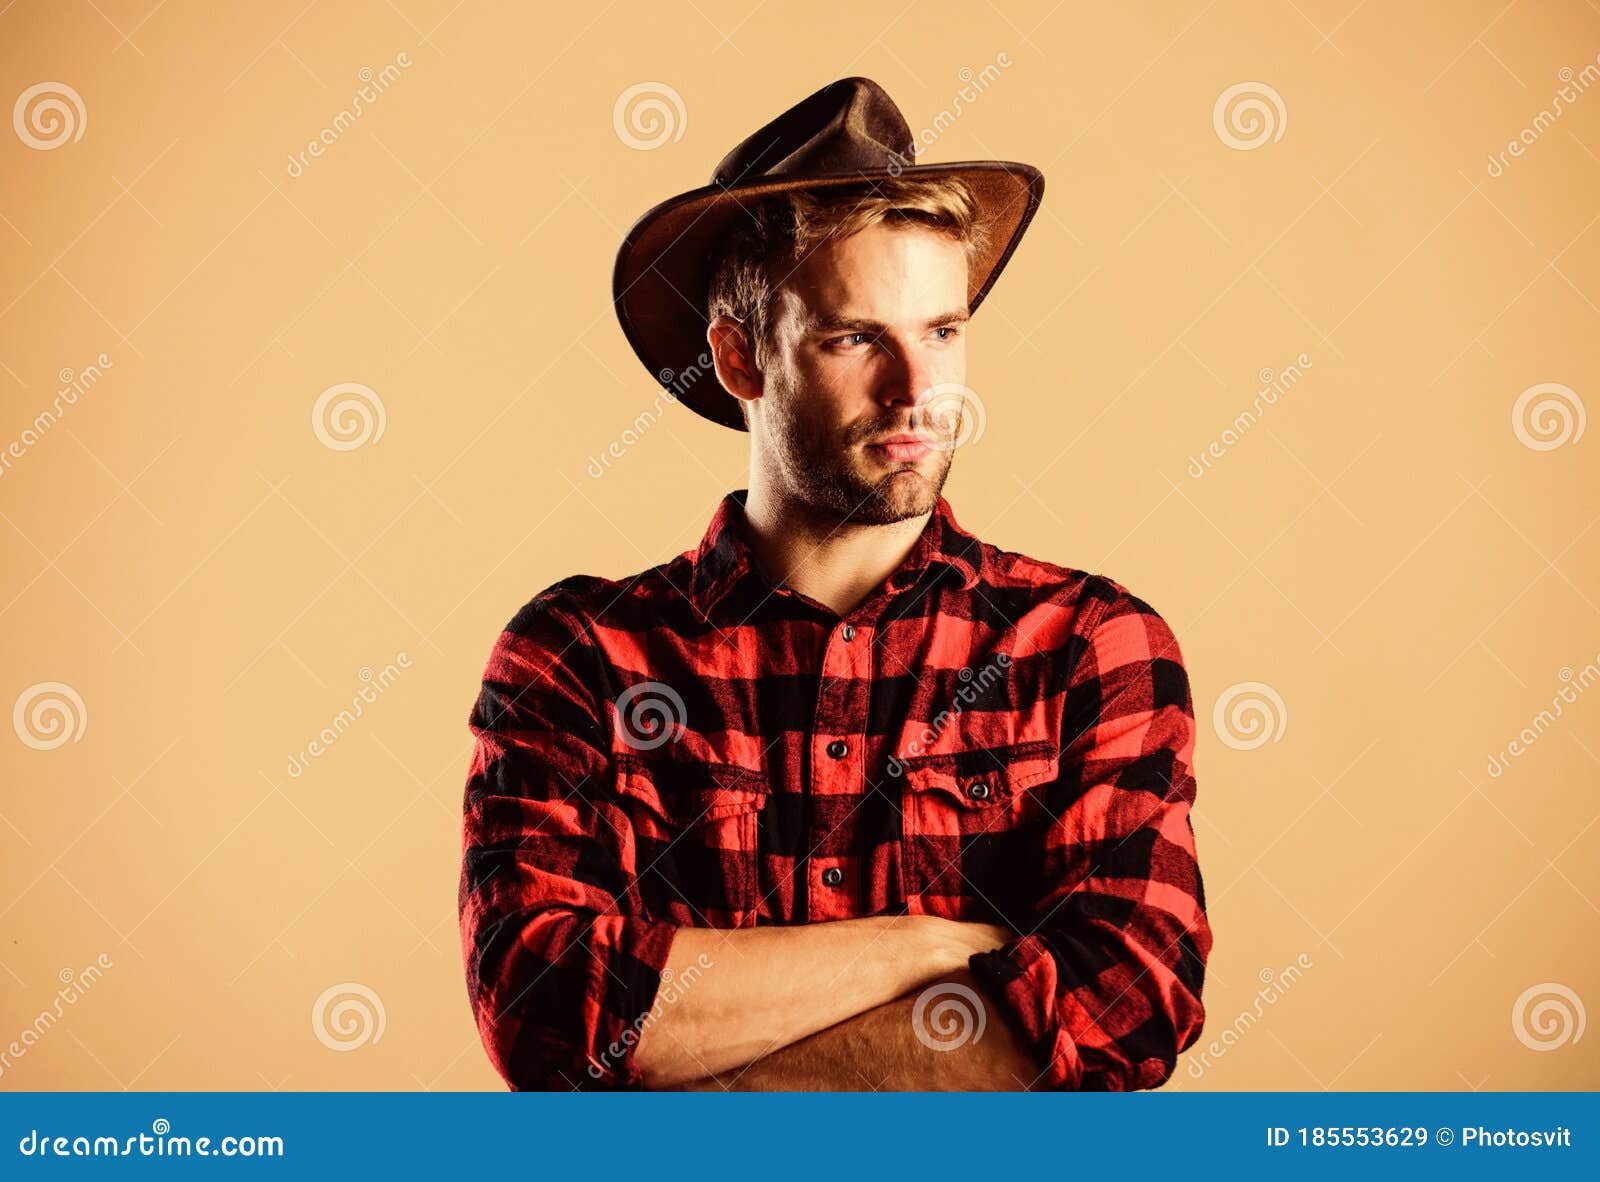 Sombreros de cowboy, Estilo del Oeste